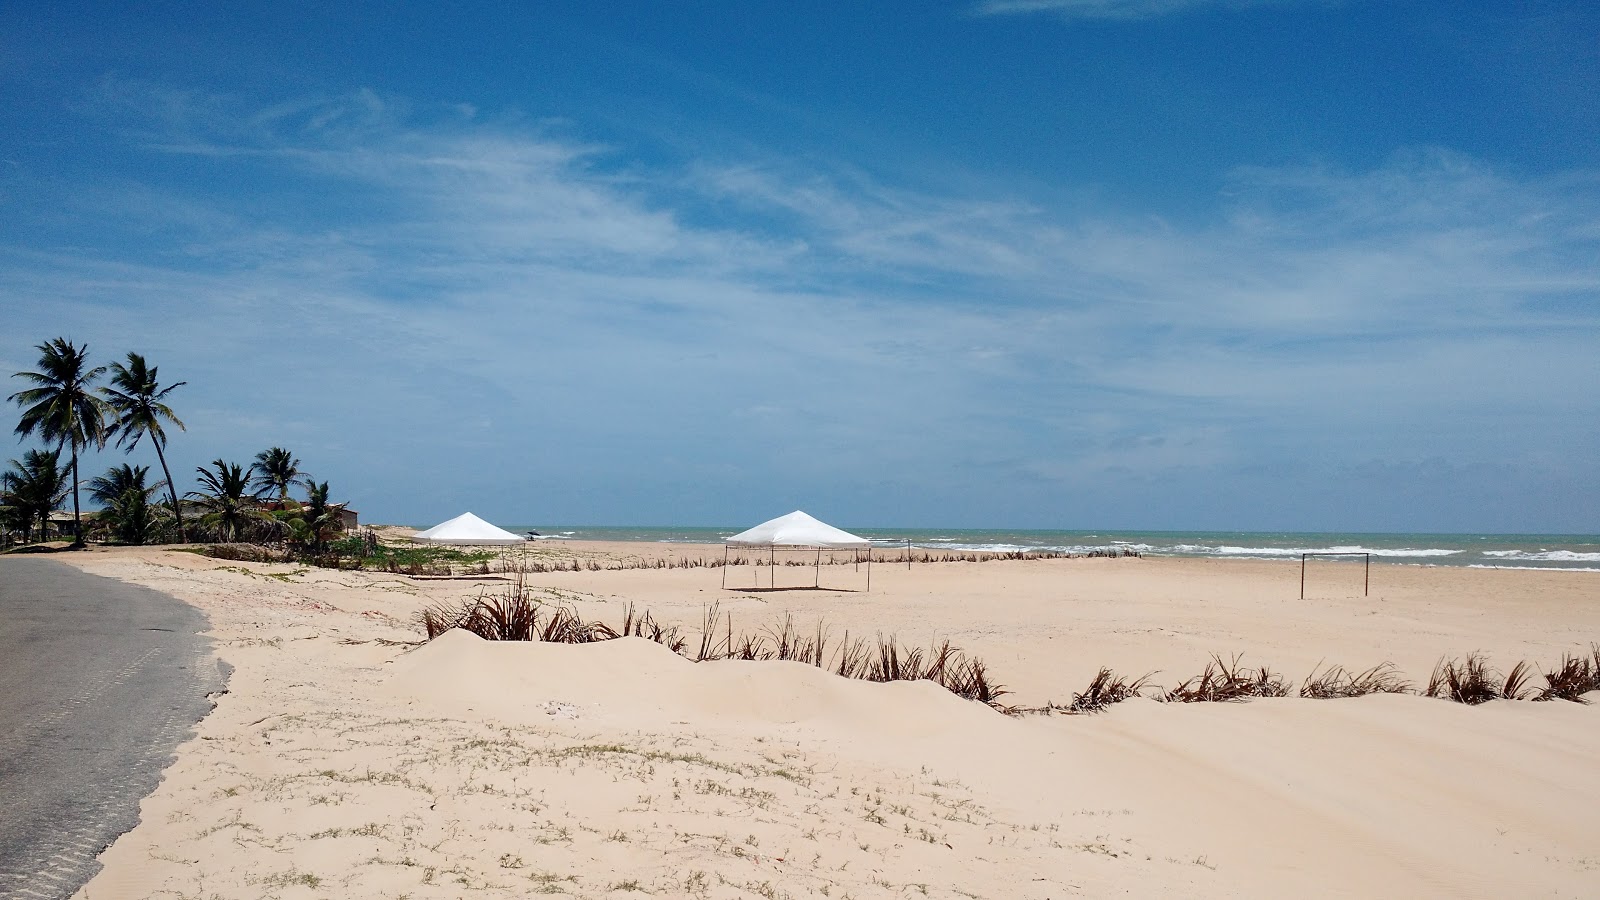 Praia de Pirambu'in fotoğrafı imkanlar alanı